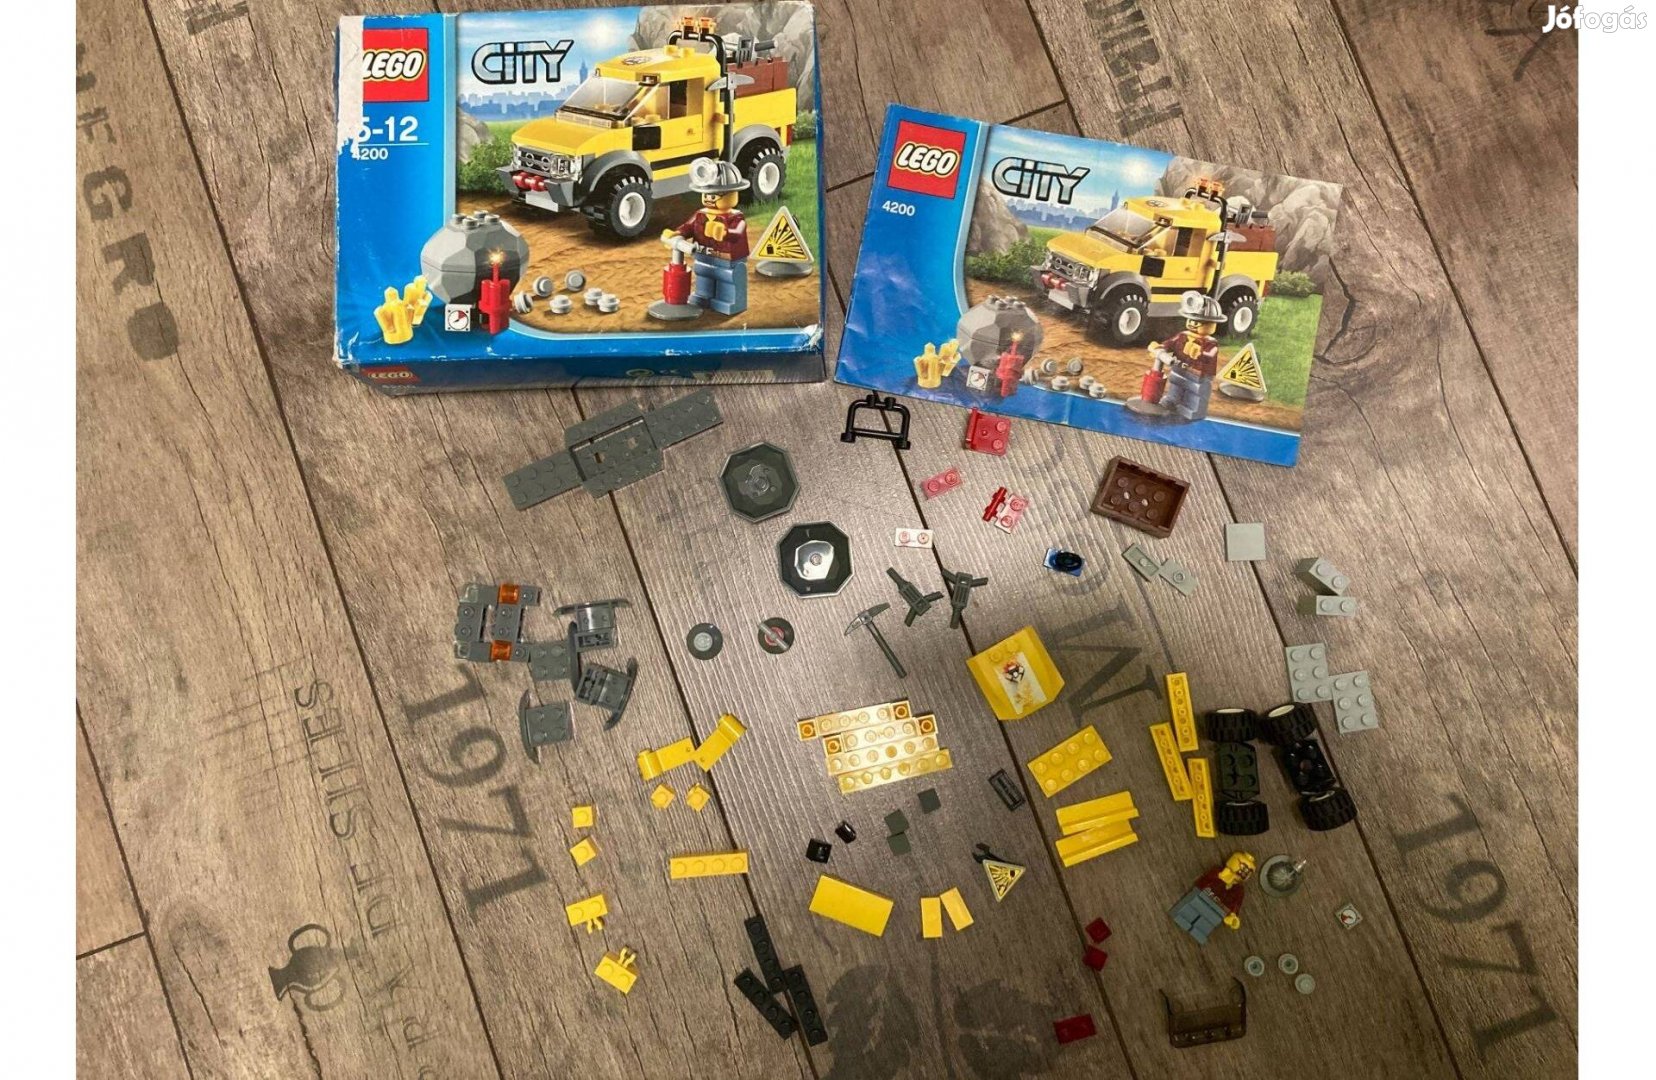 Lego bányagép 4200